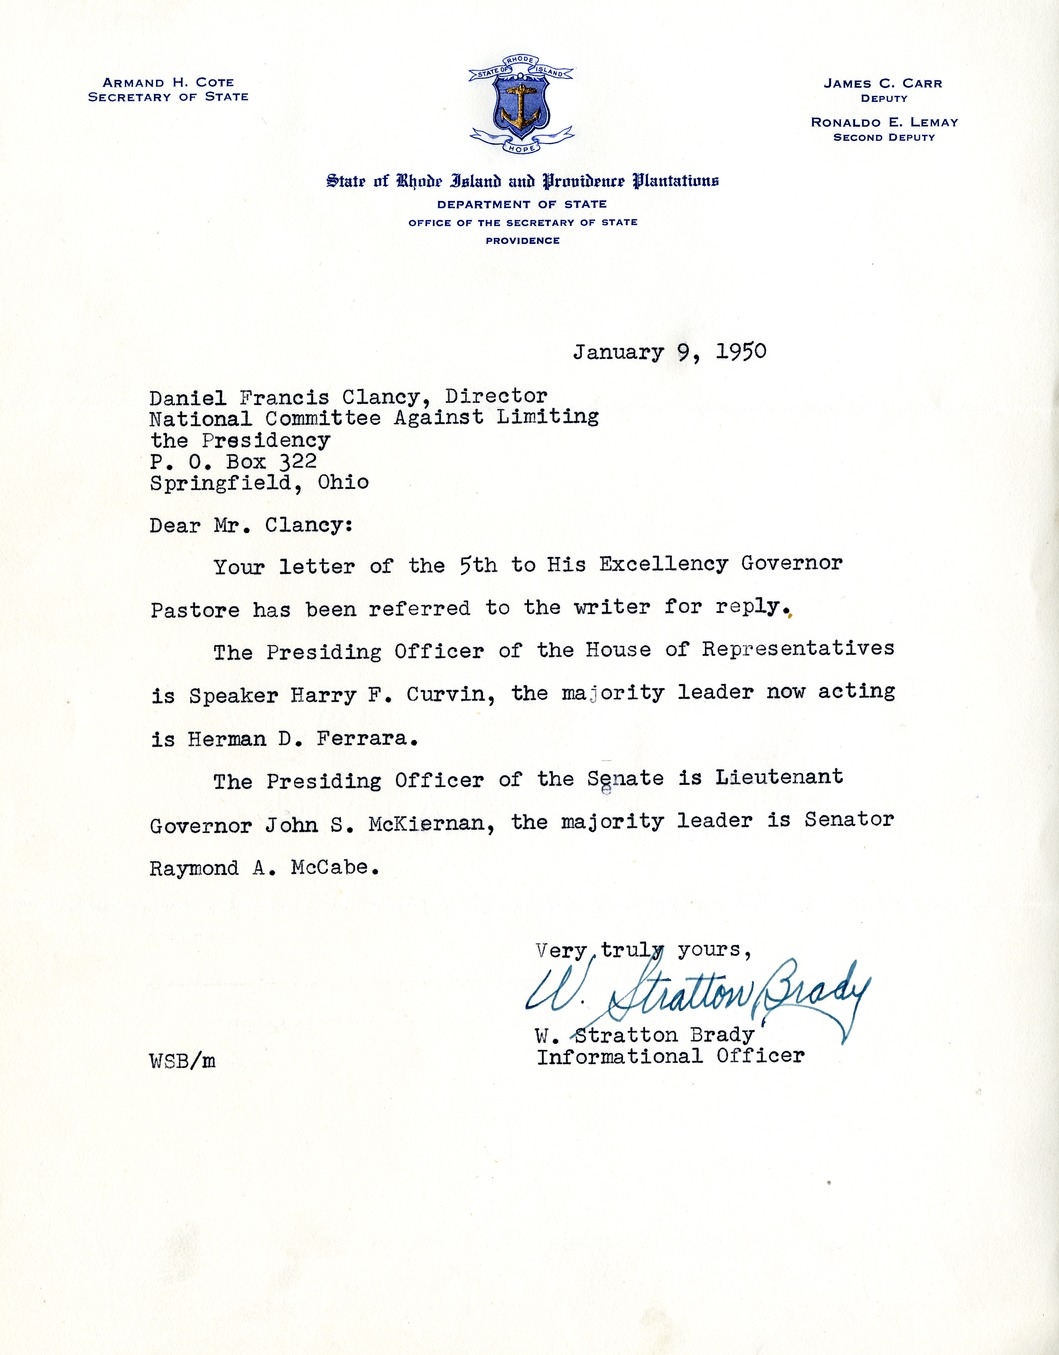 Letter from W. Stratton Brady to Daniel F. Clancy